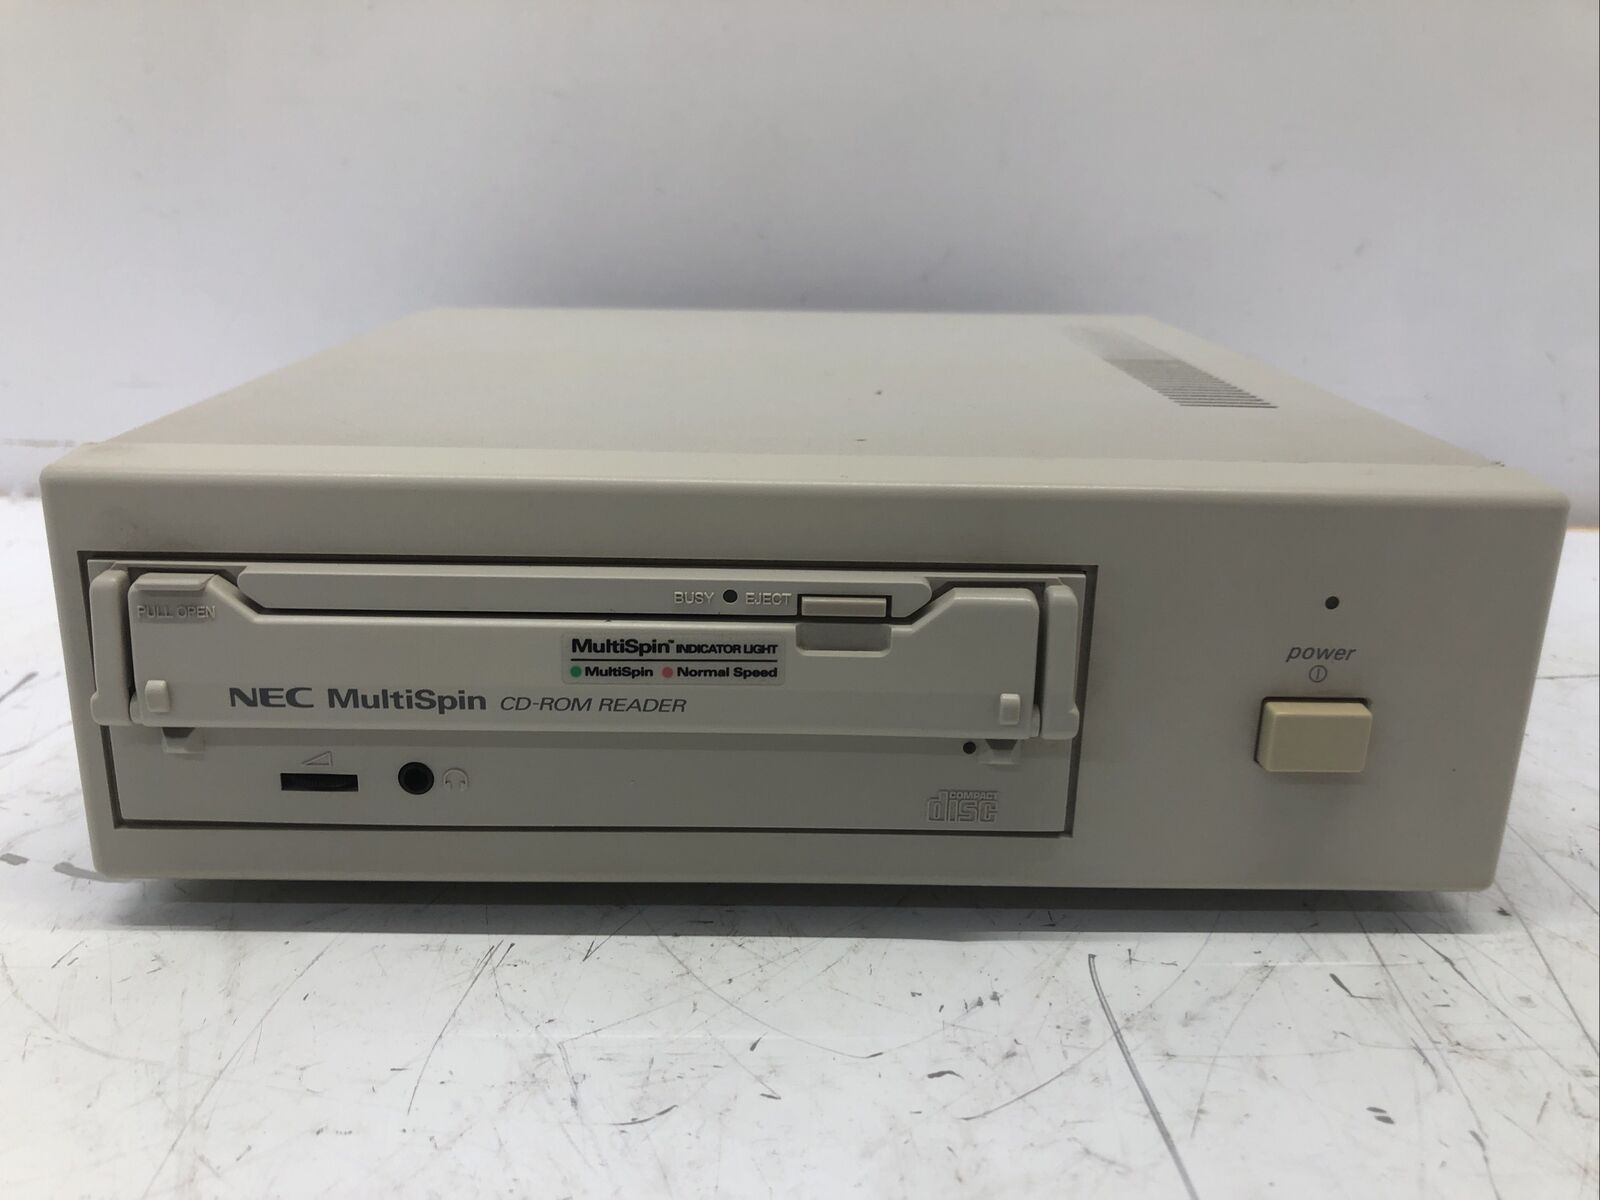 NEC Multispin CD-ROM READER CDR-74-1